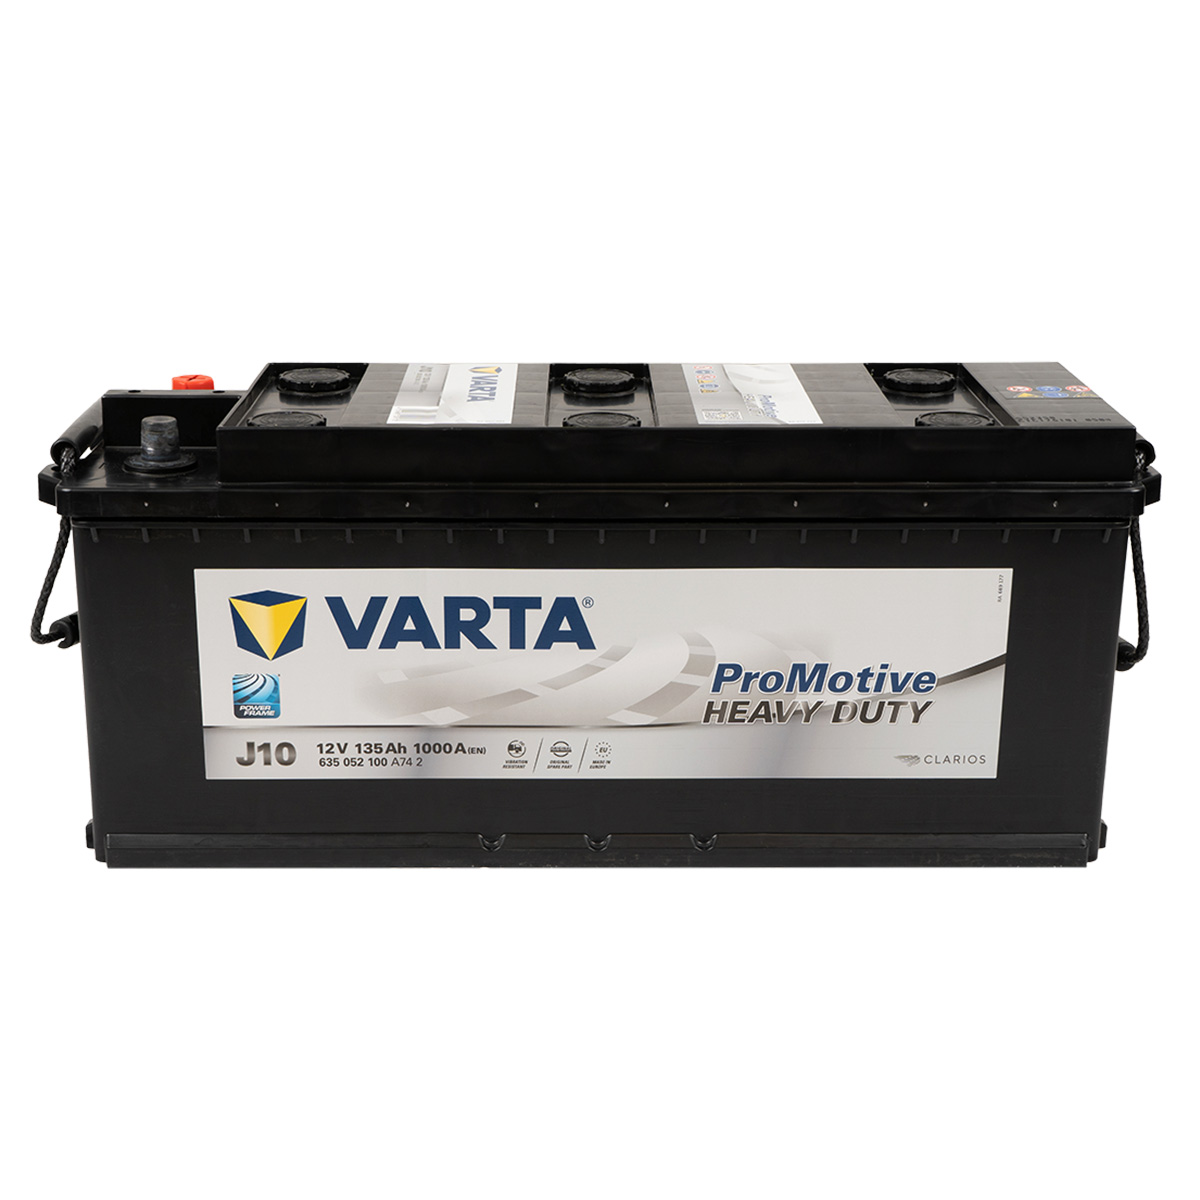 VARTA J10 ProMotive Heavy Duty 135Ah 1000A LKW Batterie 635 052 100